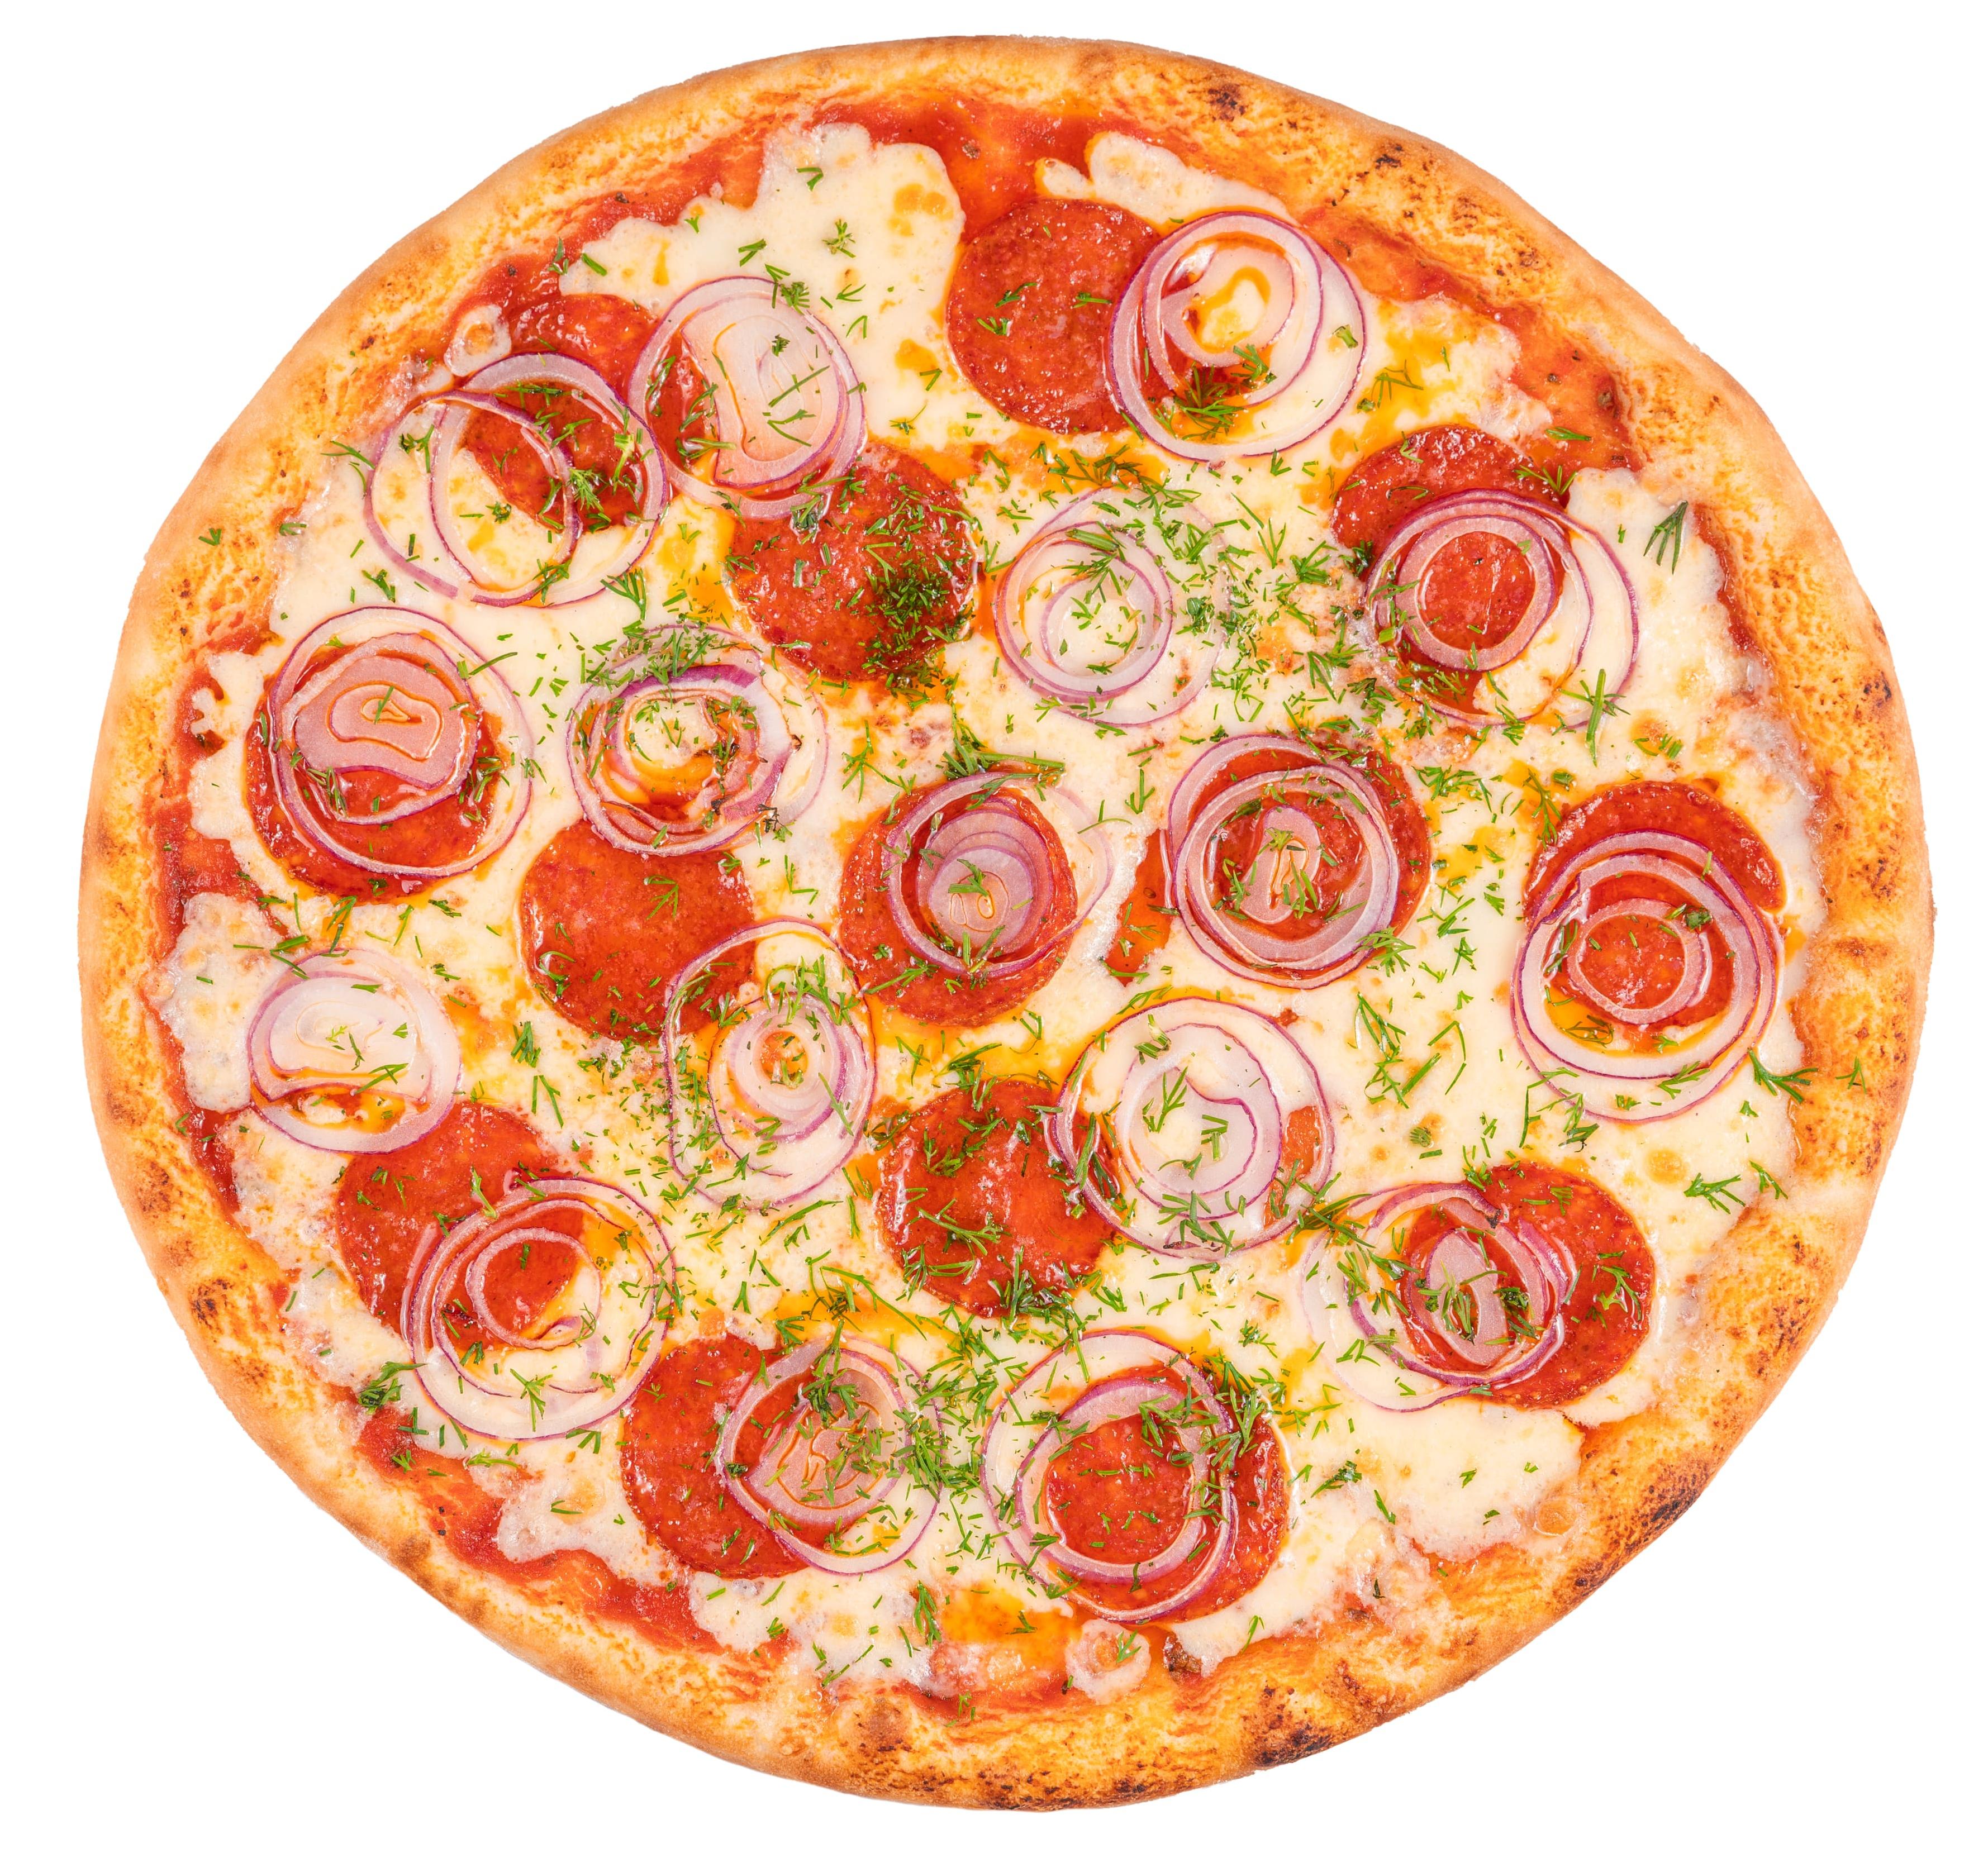 хорошая пицца отличная пицца аромат соуса пробуждает страсти пепперони и сыр на равные части фото 76